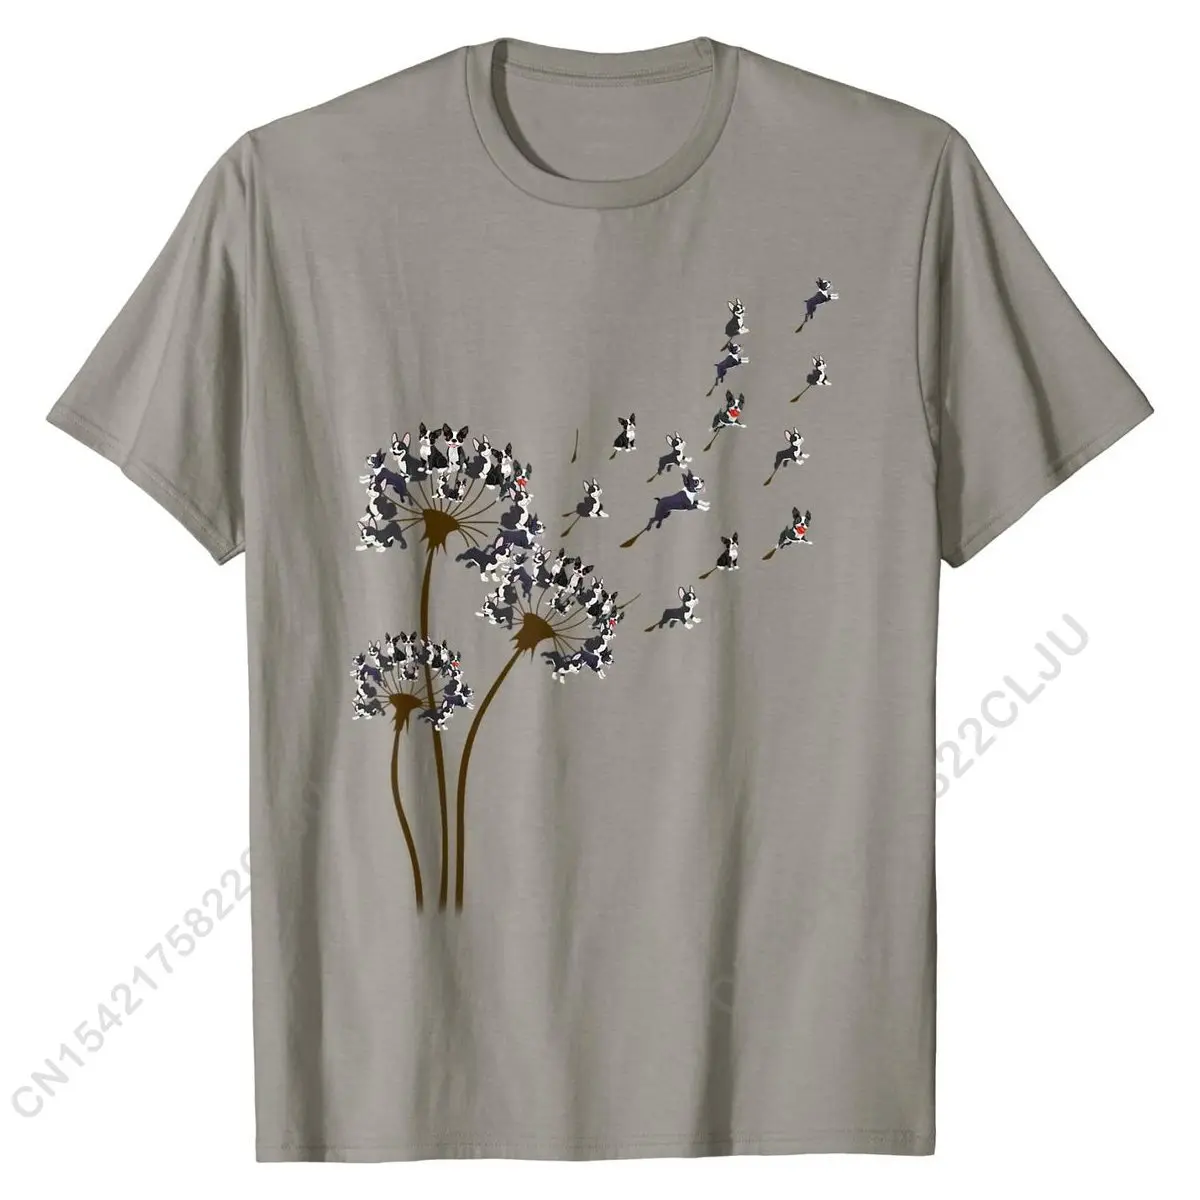 

Boston Terrier Flower Fly Dandelion Boston Terrier Funny Dog T-Shirt Men Designer Design Tops Shirts Cotton Tshirts Family